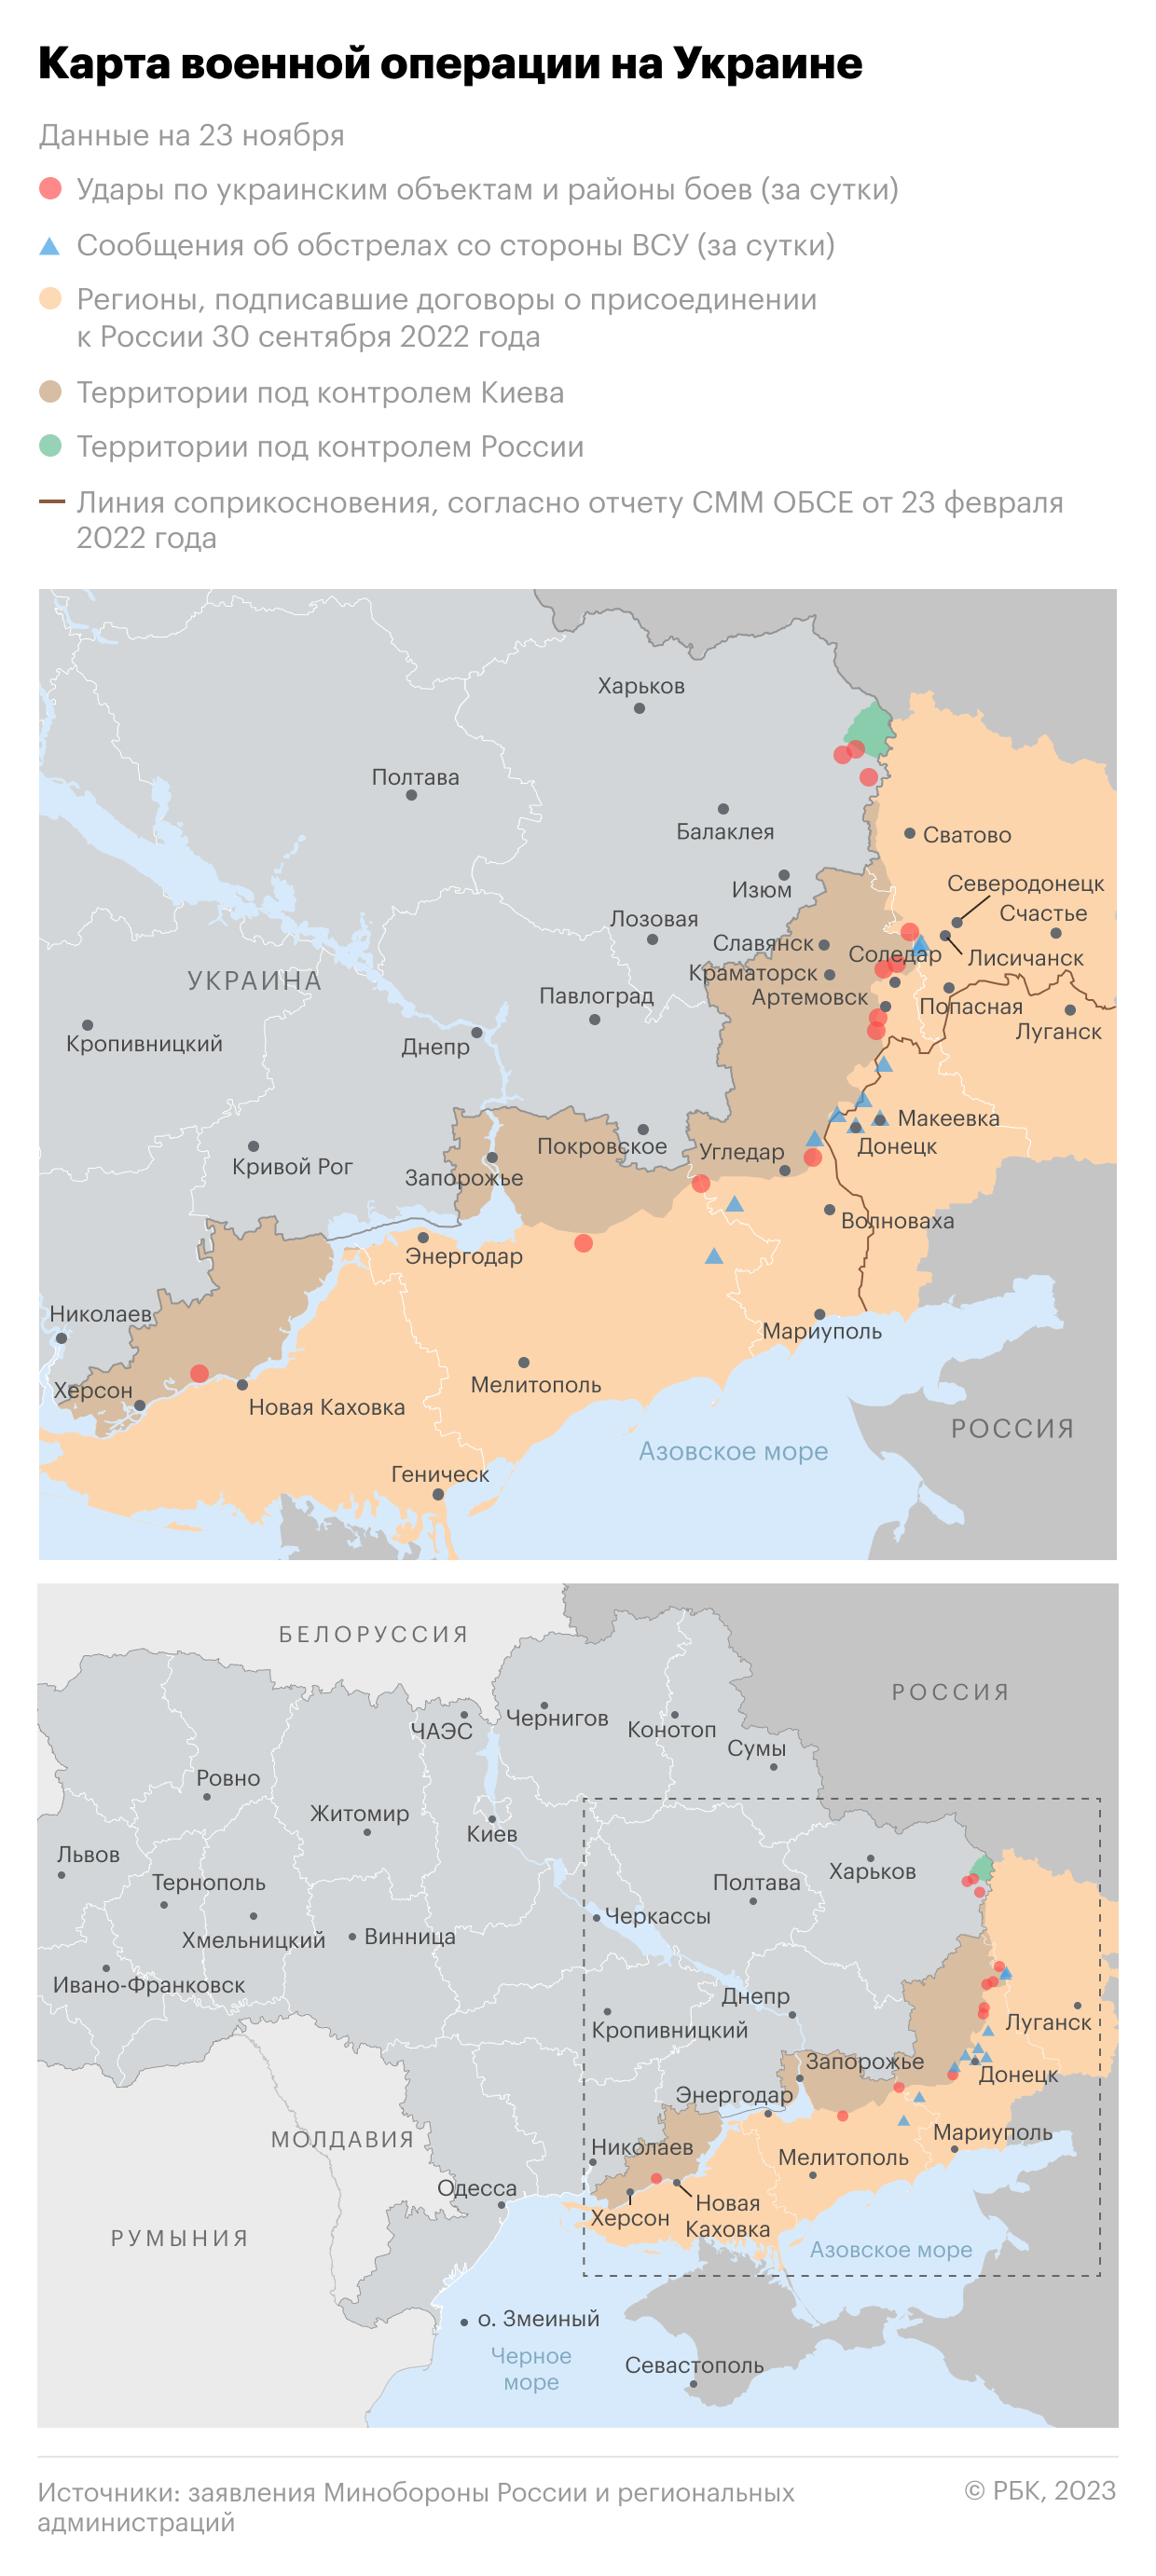 Карта украины на сегодняшний день с линией разграничения